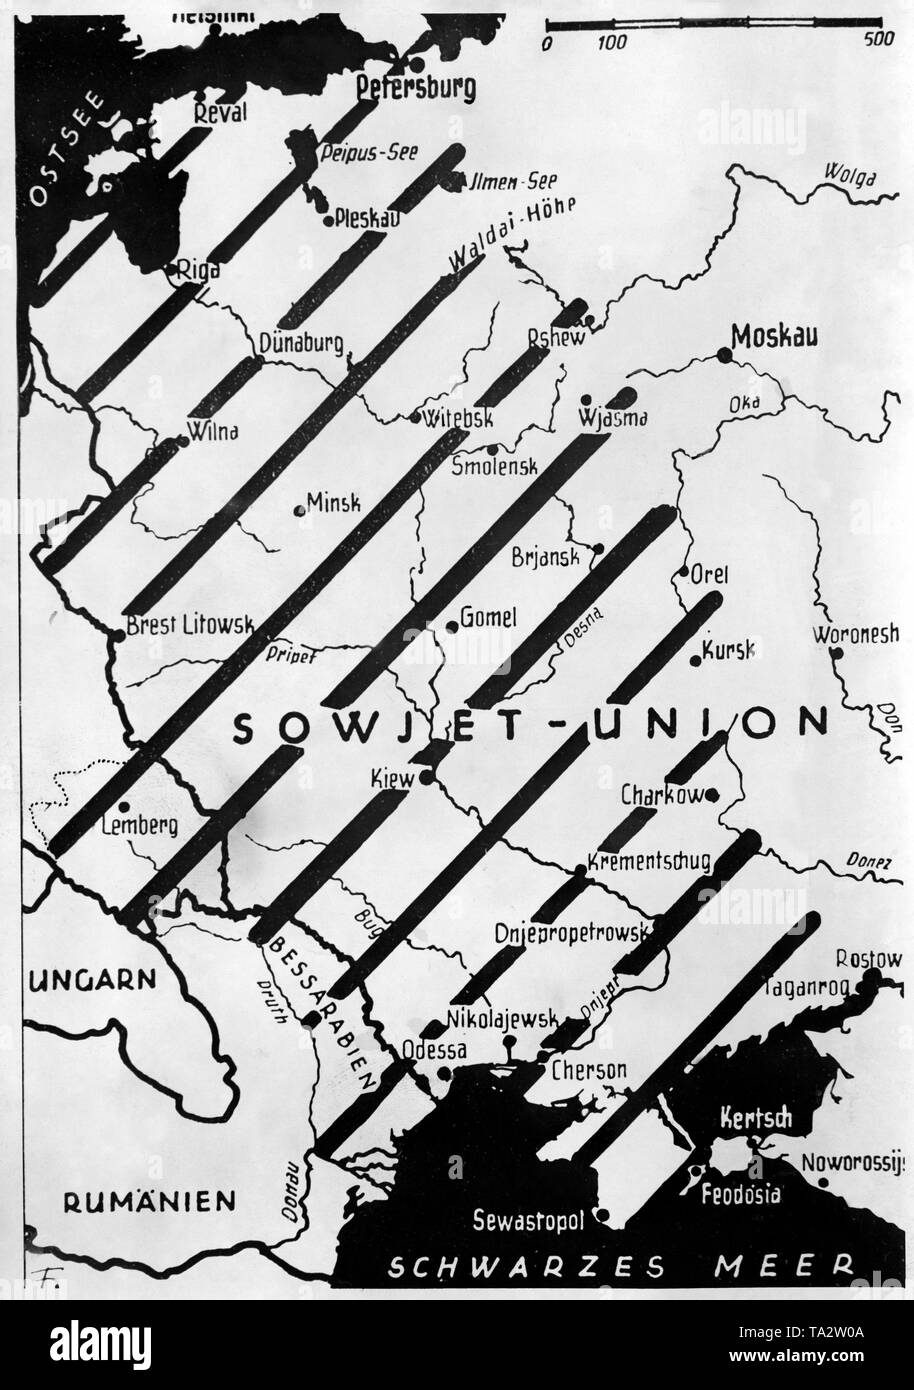 Carte de propagande soviétique présentant des territoires occupés par les troupes allemandes Banque D'Images